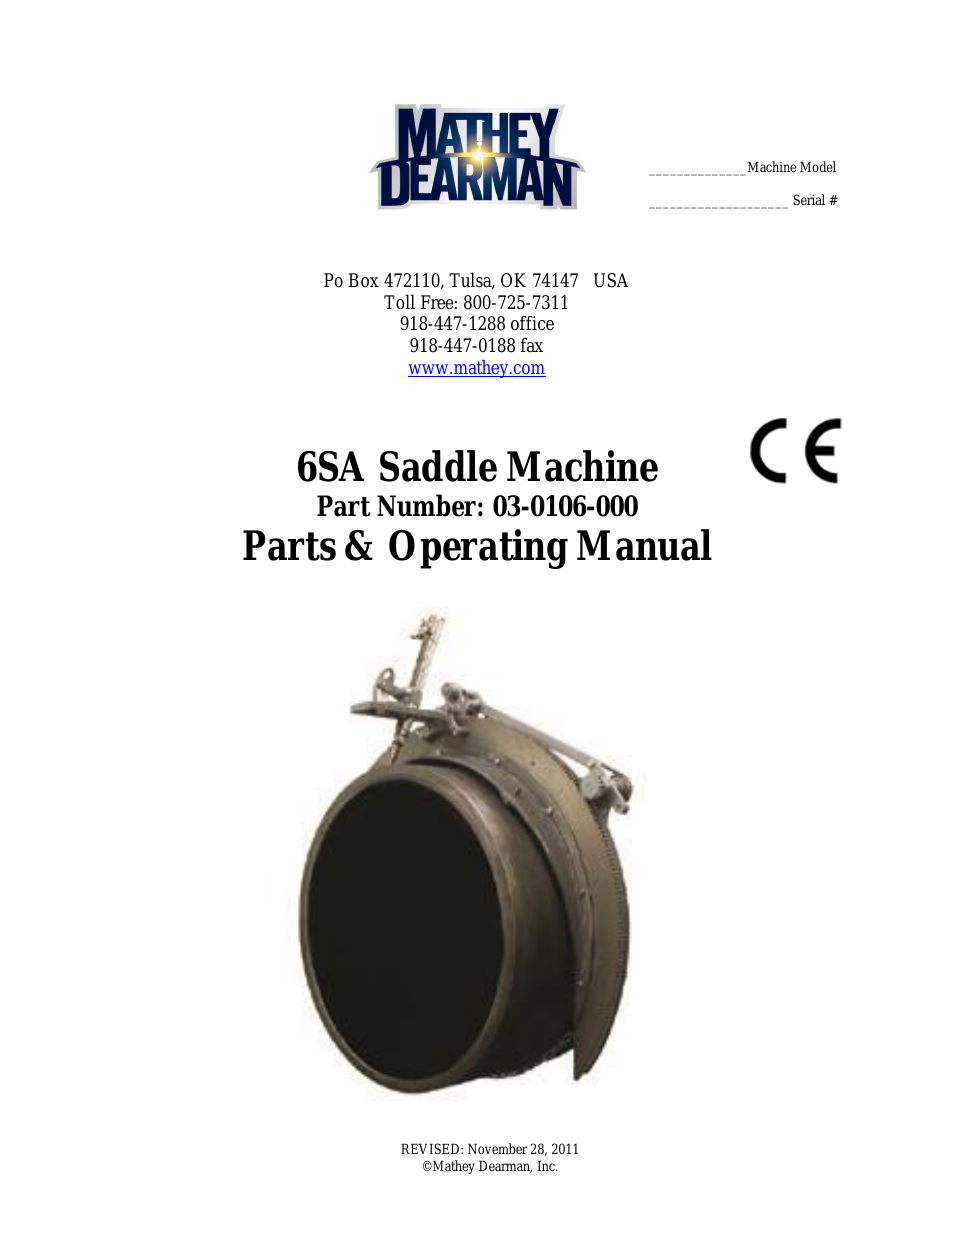 6SA Saddle Machine